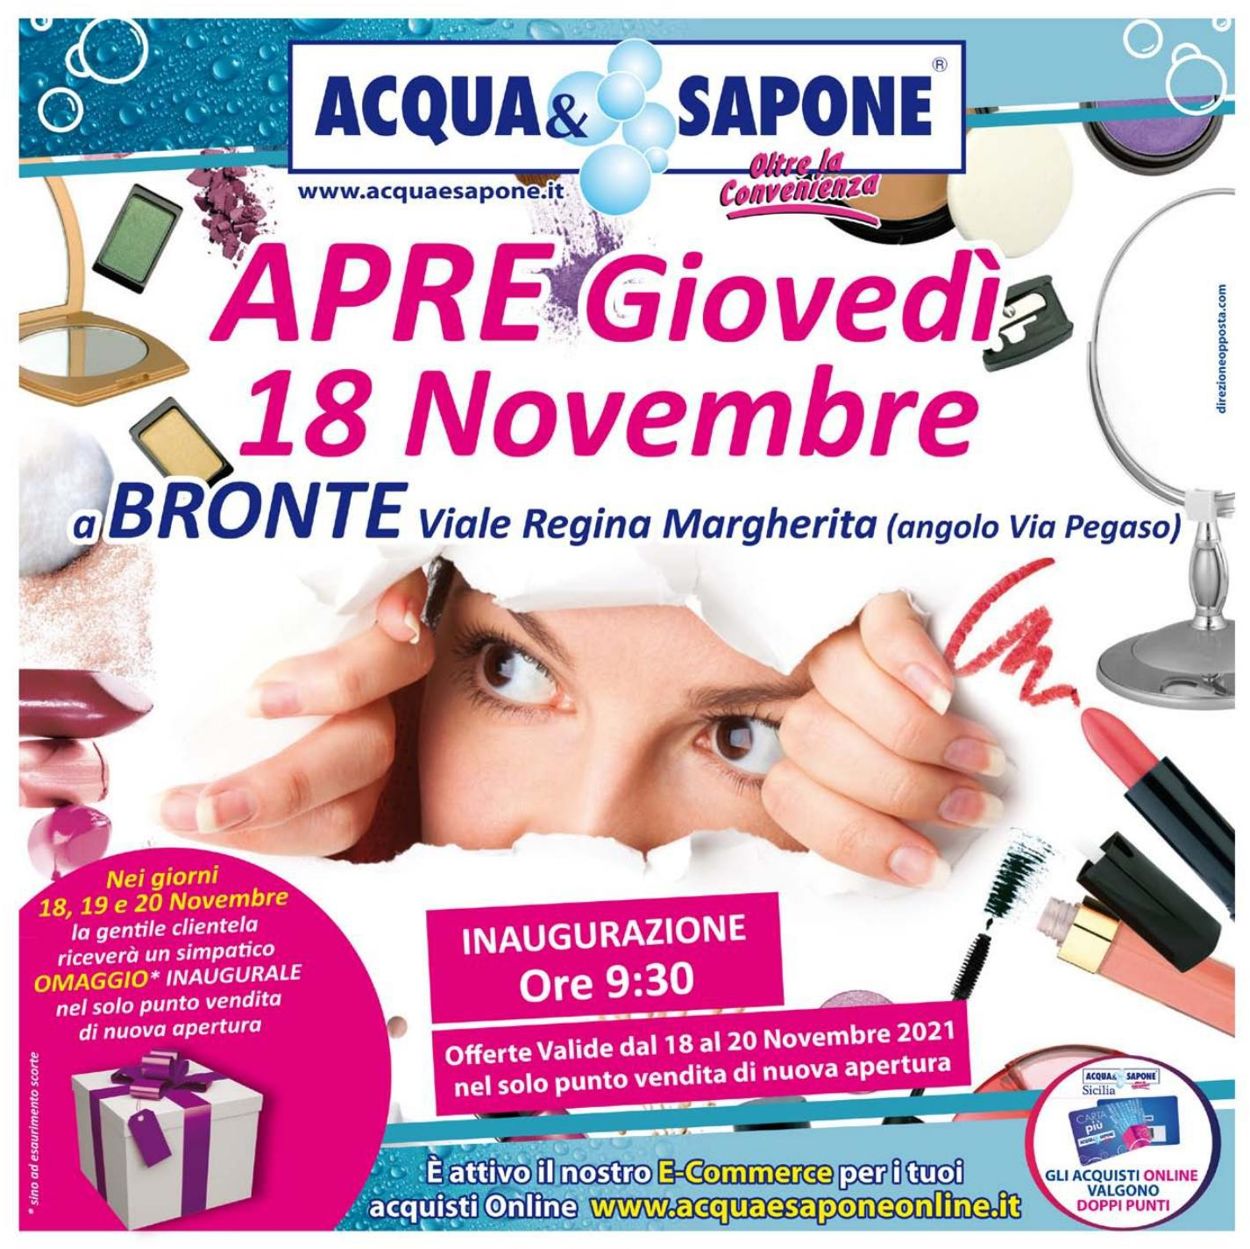 Acqua & Sapone Volantino dal 18/11/2021